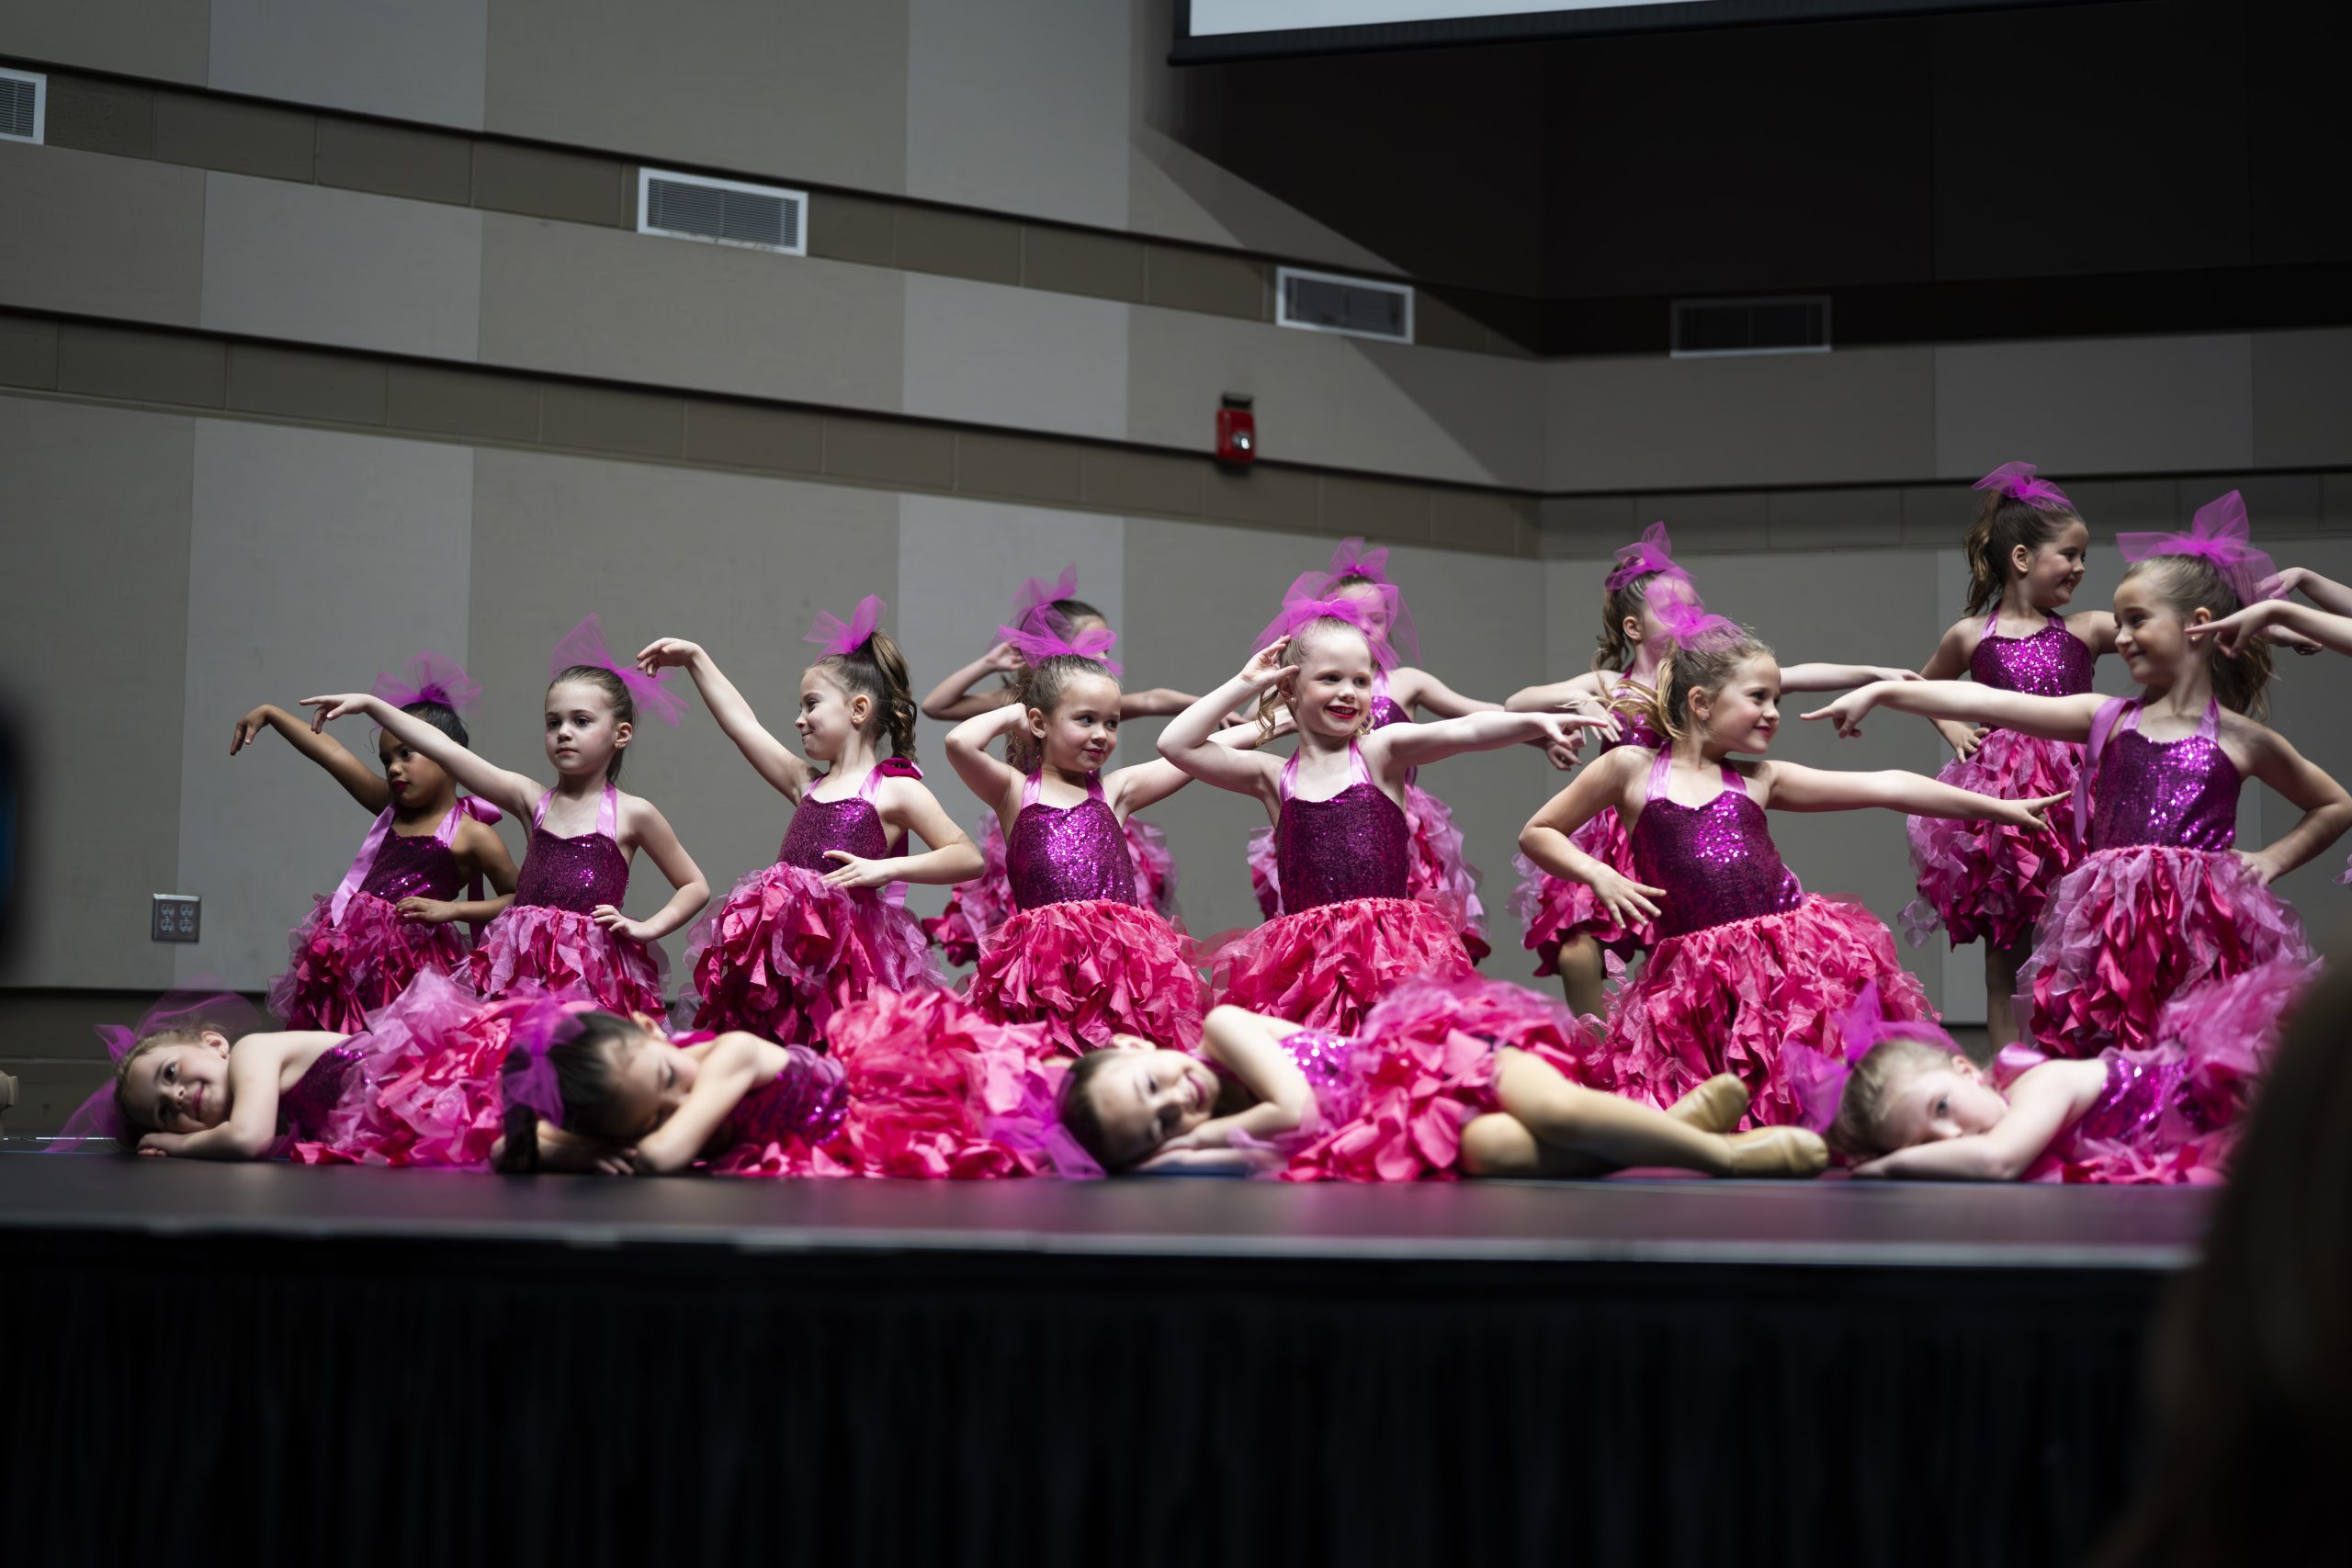 Dancers Against Cancer Gala raises $32,000 for groups battling cancer